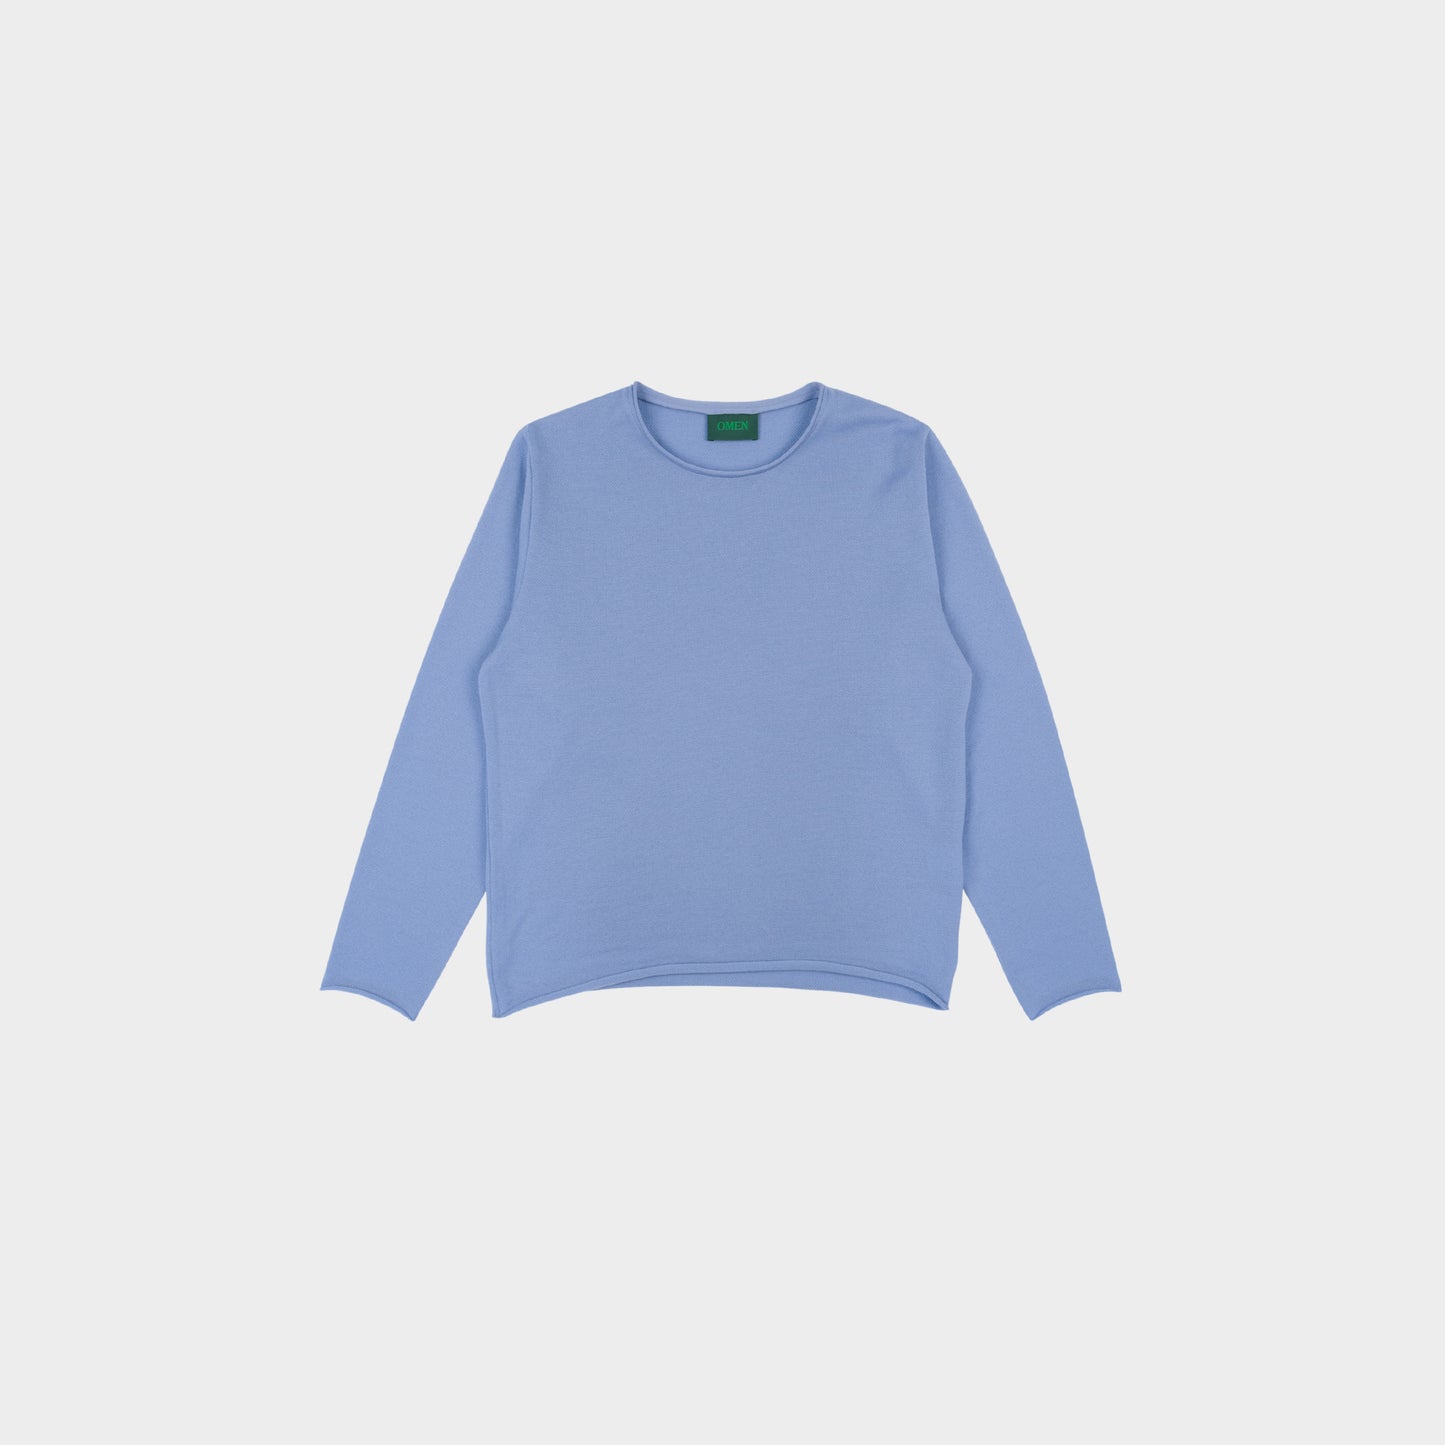 OMEN Pullover Christo Futter in Farbe vergissmeinnicht